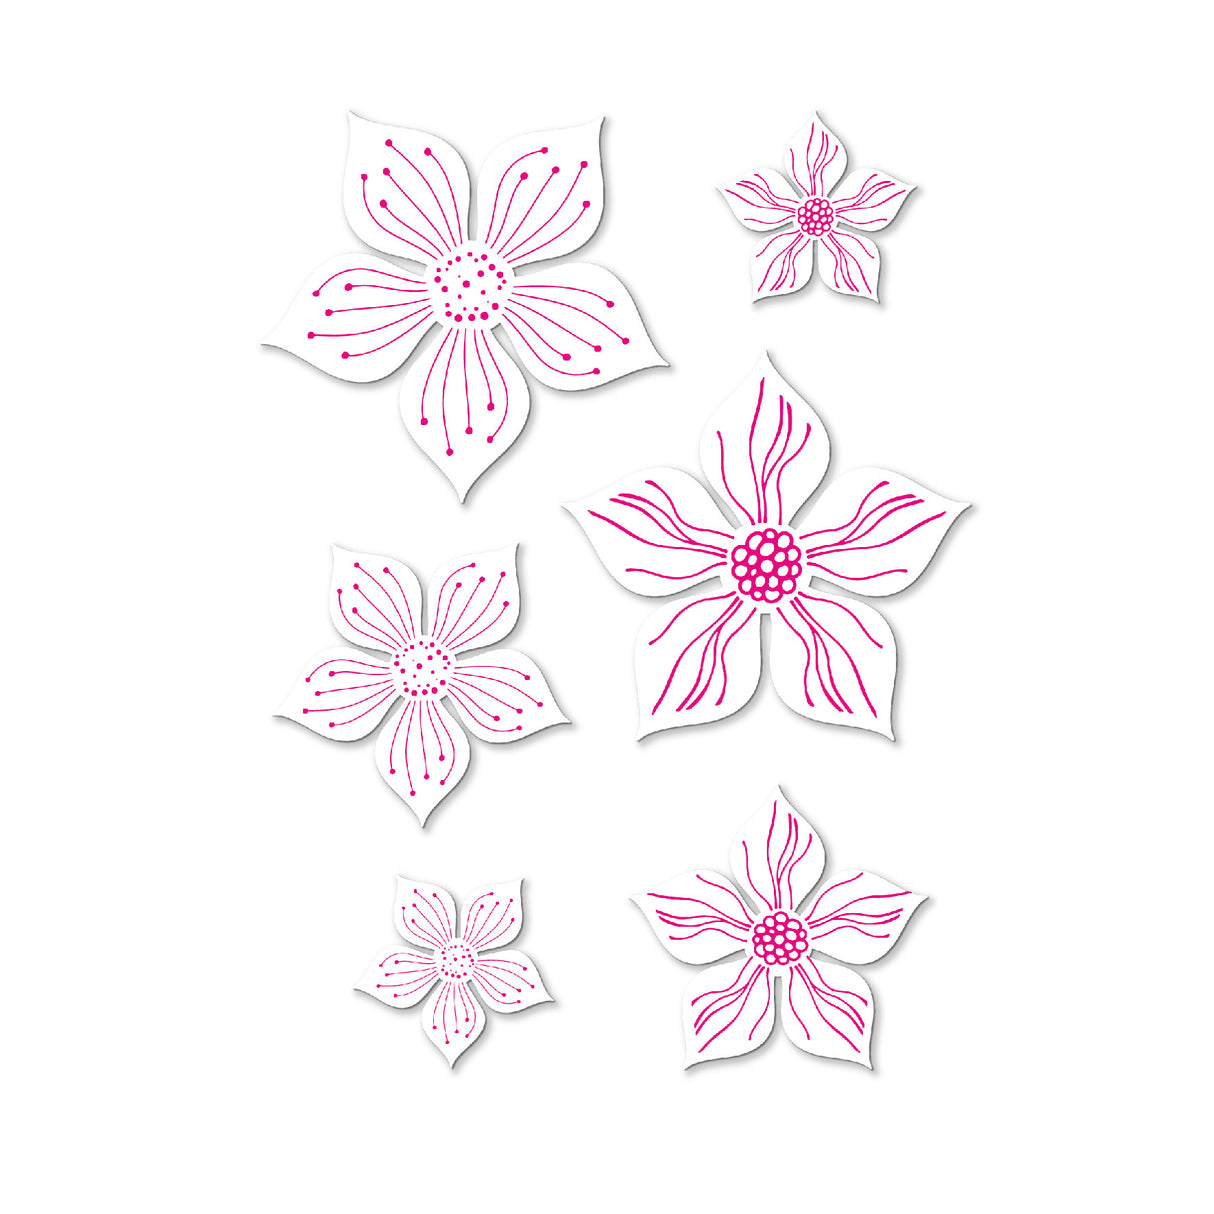 Chloes Creative Cards Die & Stamp Set - Flower Power